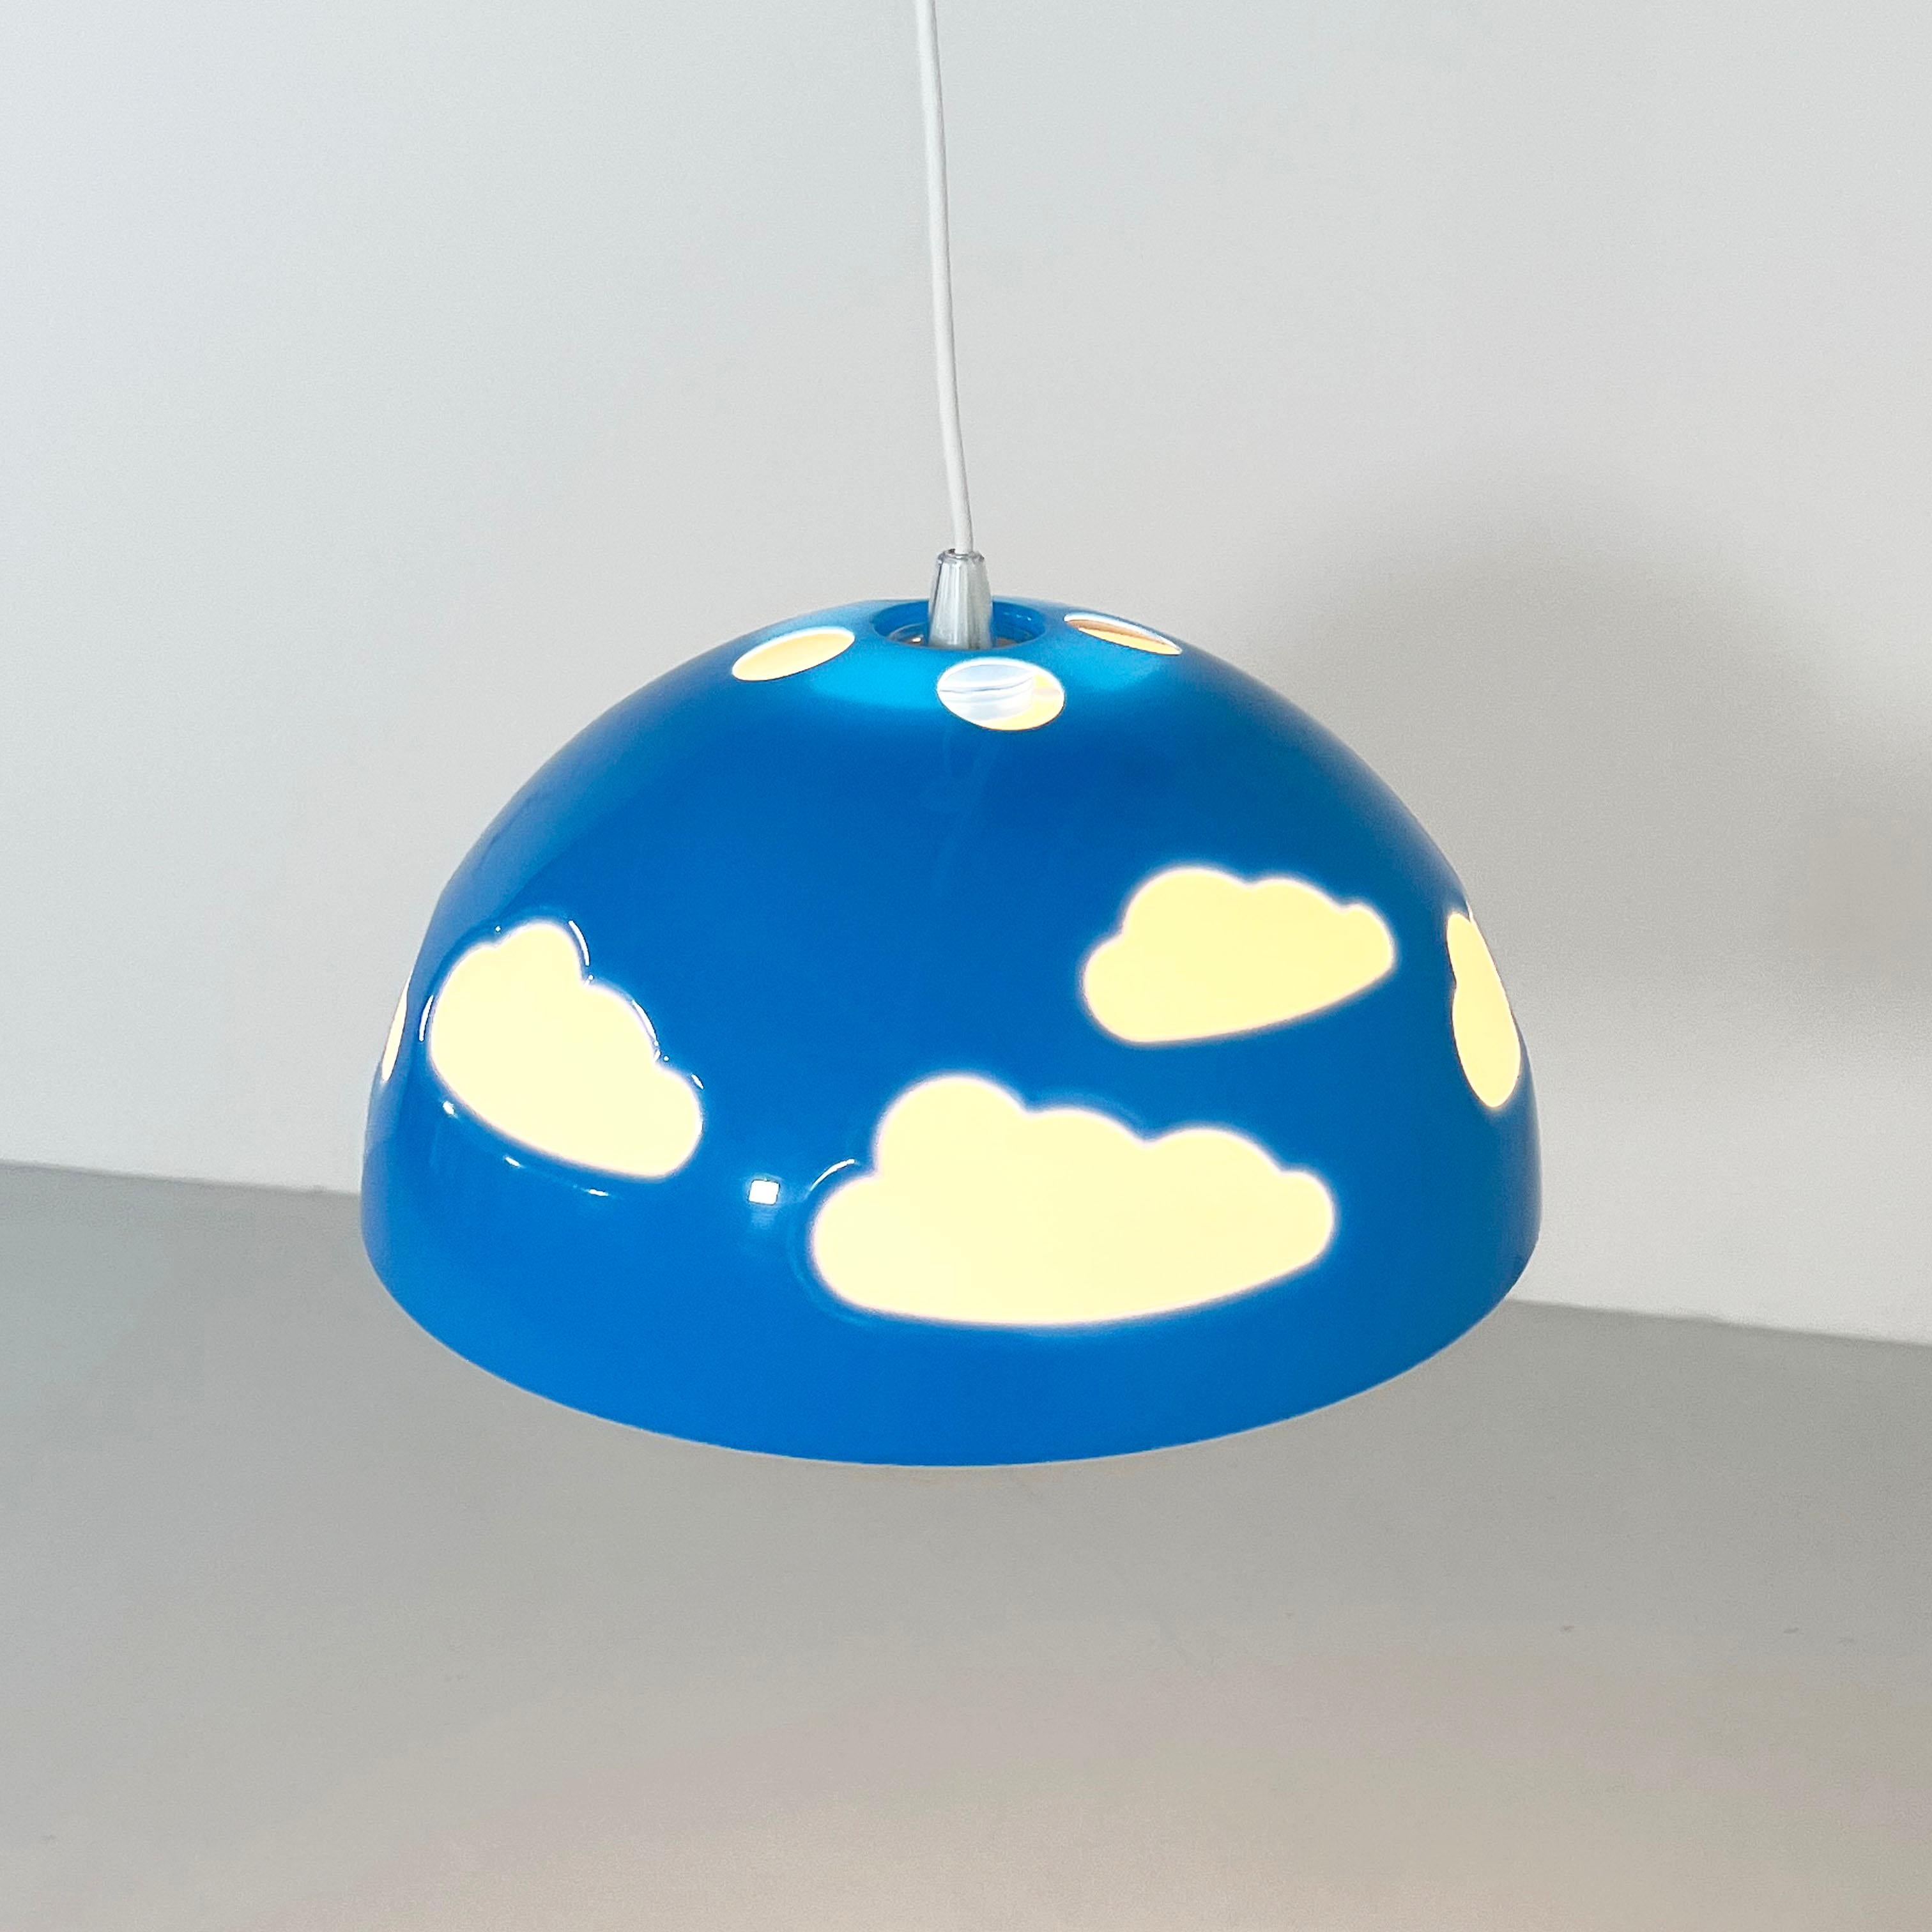 Designer - Henrik Preutz
Producer - Ikea
Model - Skojig Cloud Pendant Lamp 
Design Period - Nineties
Measurements - Width 37 cm x Depth 37 cm x Height 24 cm (Cable Length 60 cm) 
Materials - Plastic
Color - Blue, White
Condition - Good